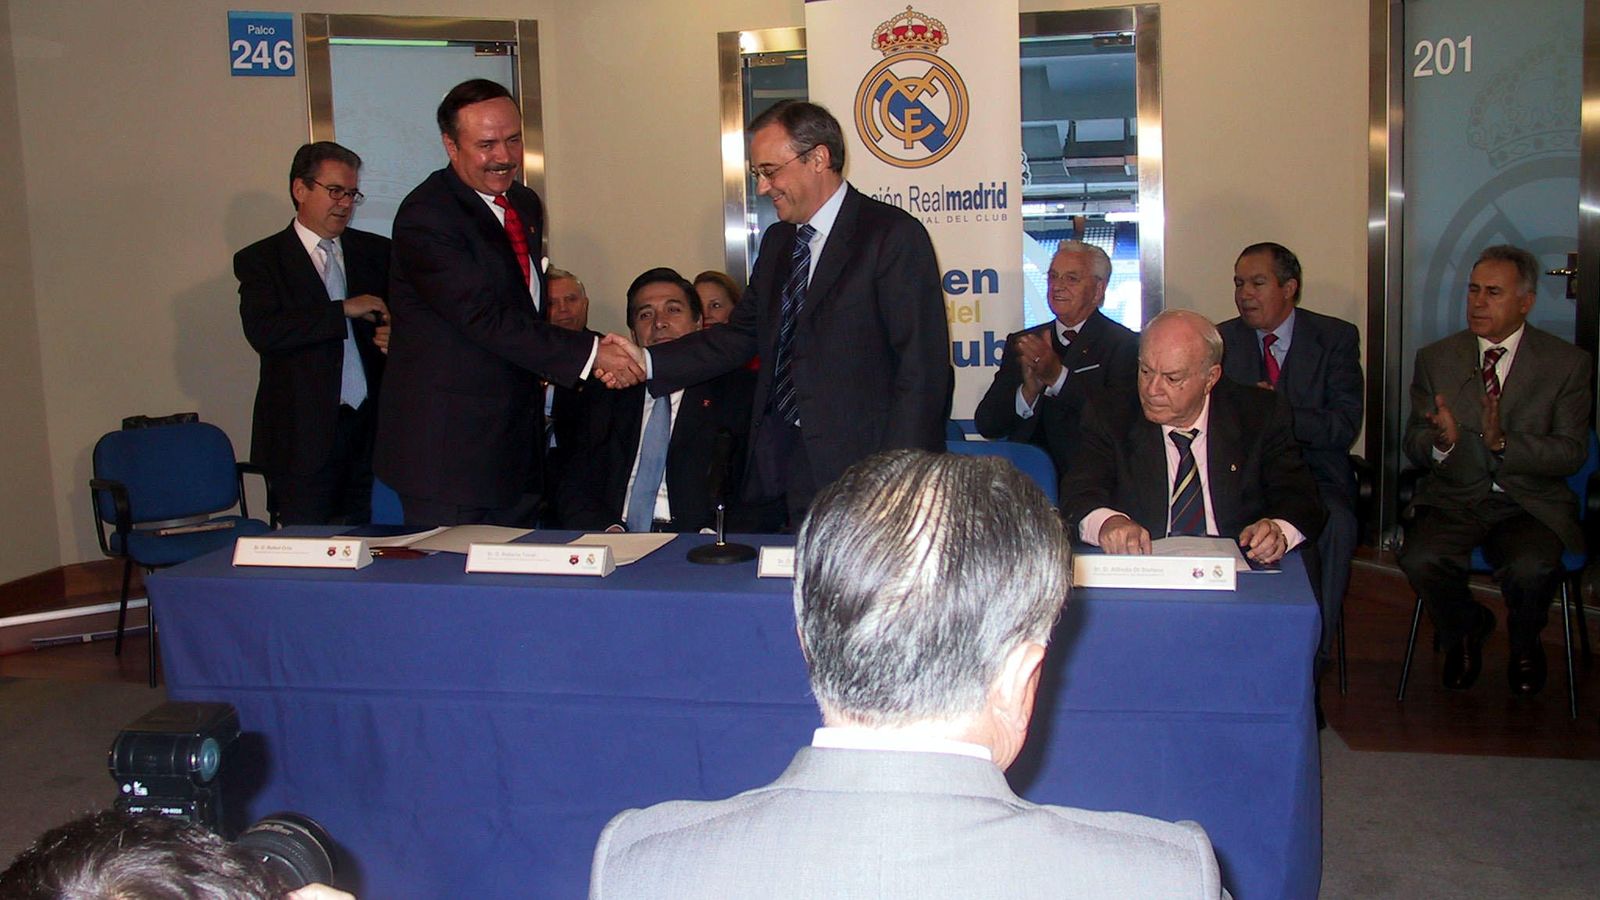 Foto: Florentino Pérez, en un evento de la Fundación Real Madrid (FOTO: Archivo LMG)